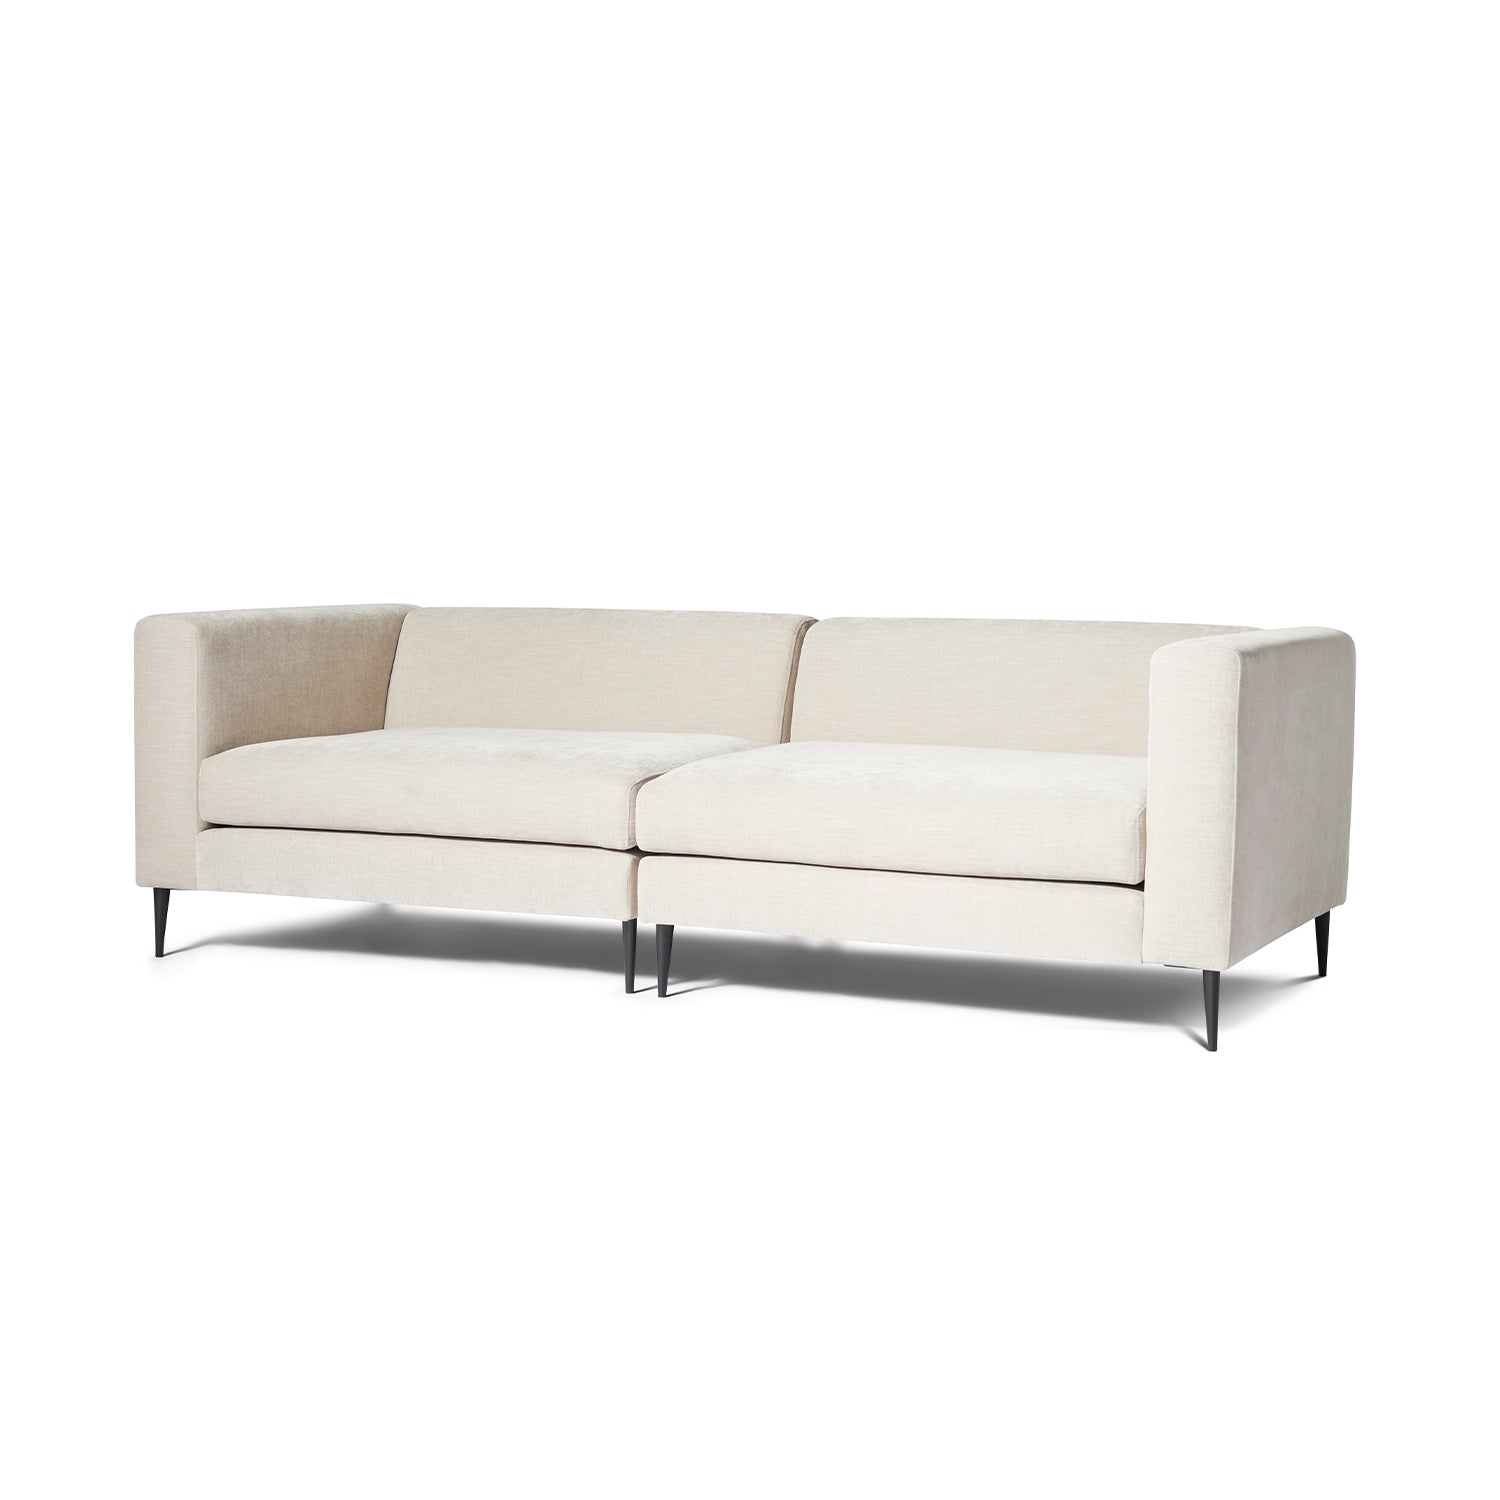 Malaga XL 2 personers sofa - Møbelkompagniet